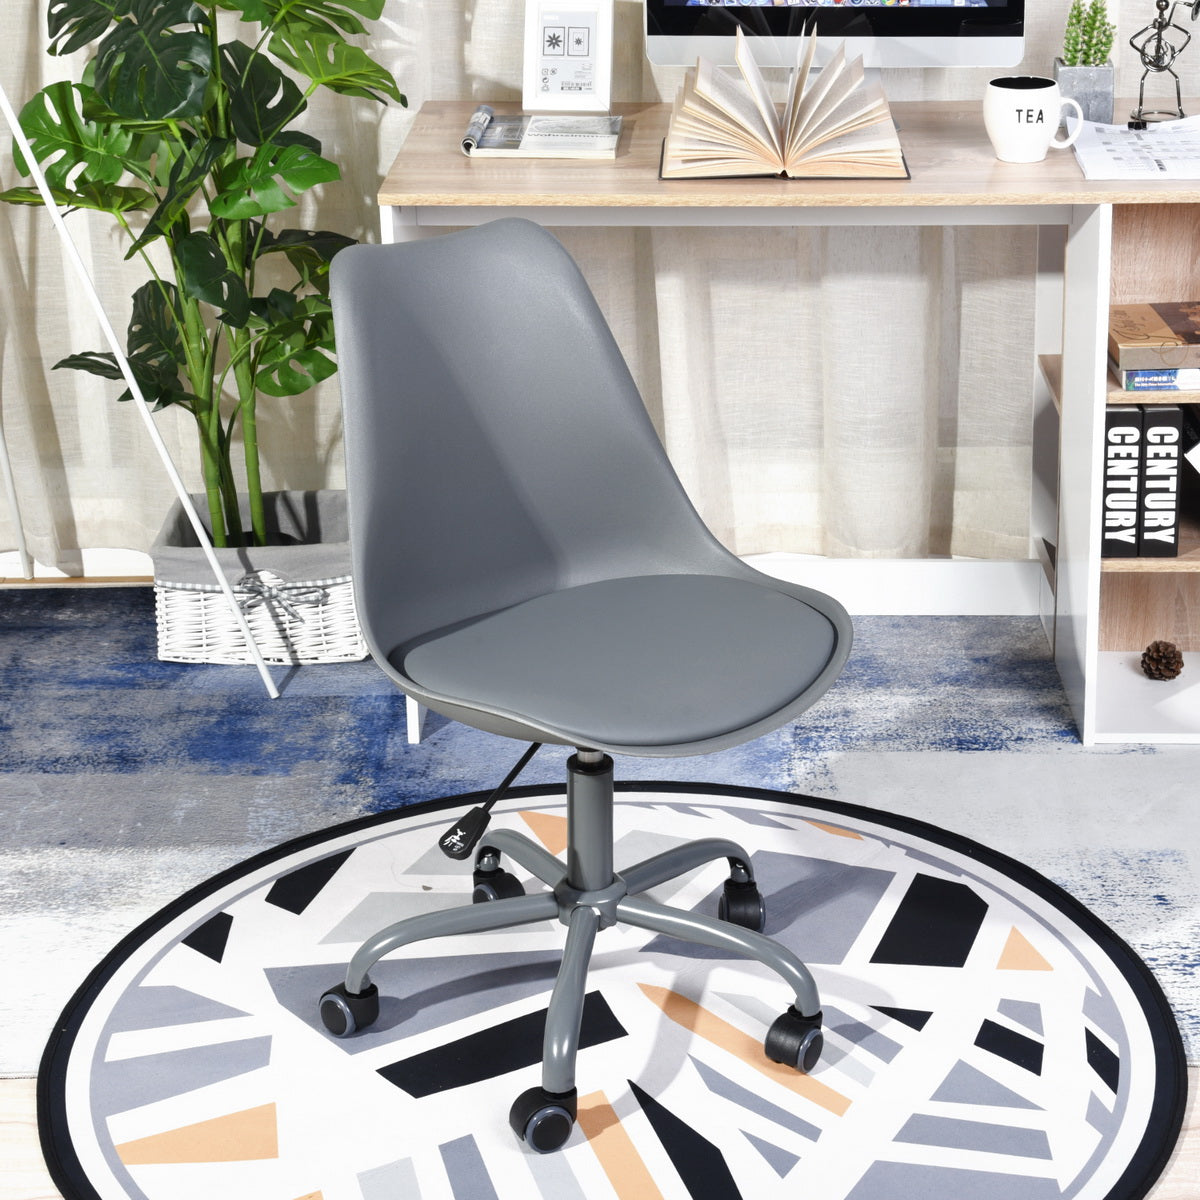 Office chair on wheels, metal legs - BLOKHUS